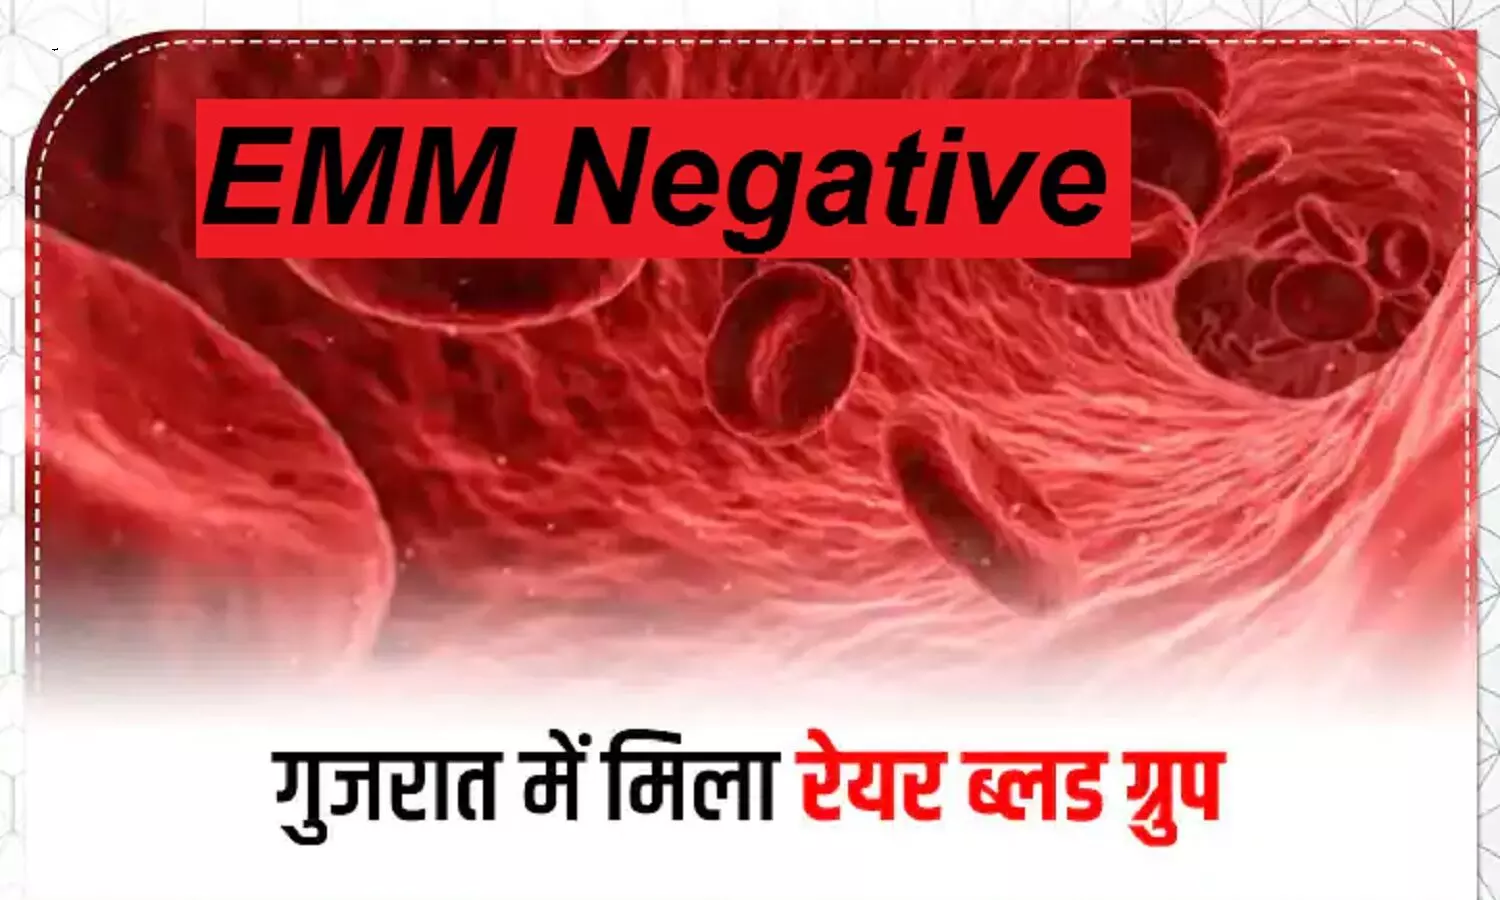 EMM Negative Blood Group: ऐसा ब्लड ग्रुप जो सिर्फ दुनिया के 10 लोगों में है, इनमे से एक केस गुजरात में मिला है